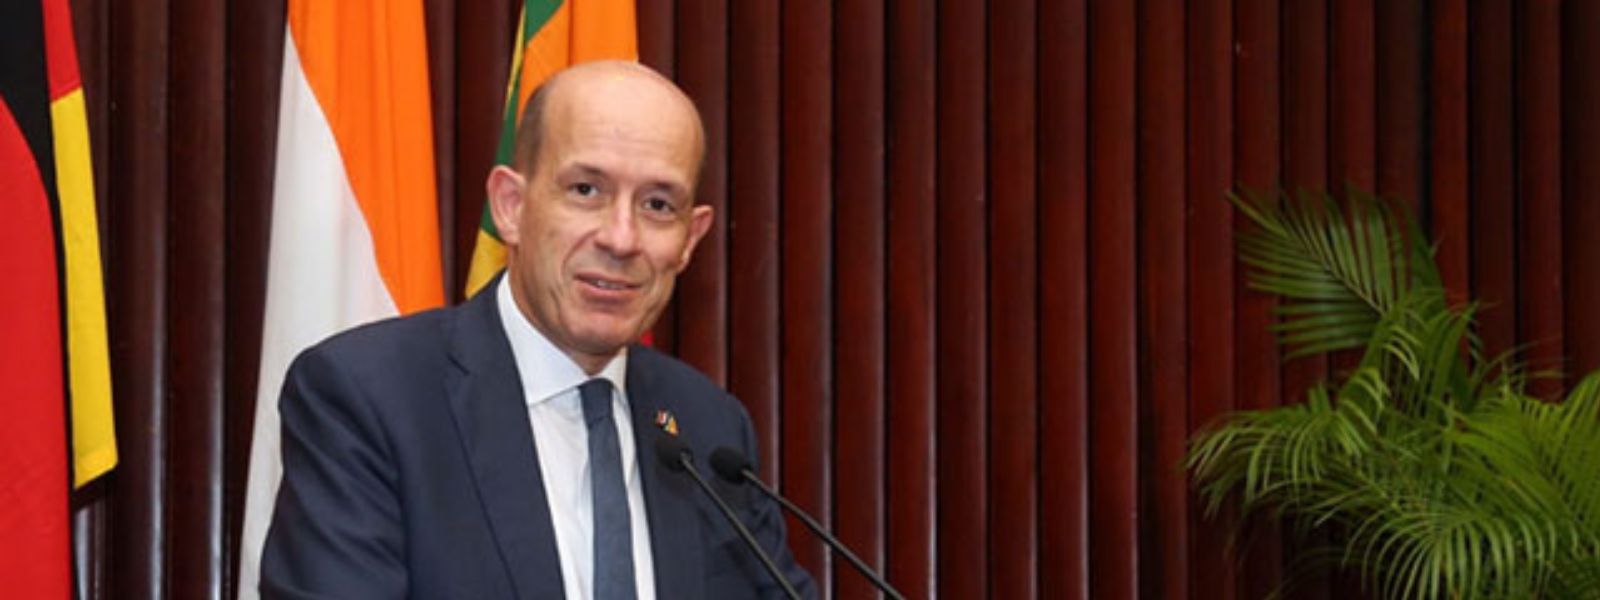 Sri Lanka Shocked By French Ambassador's Passing